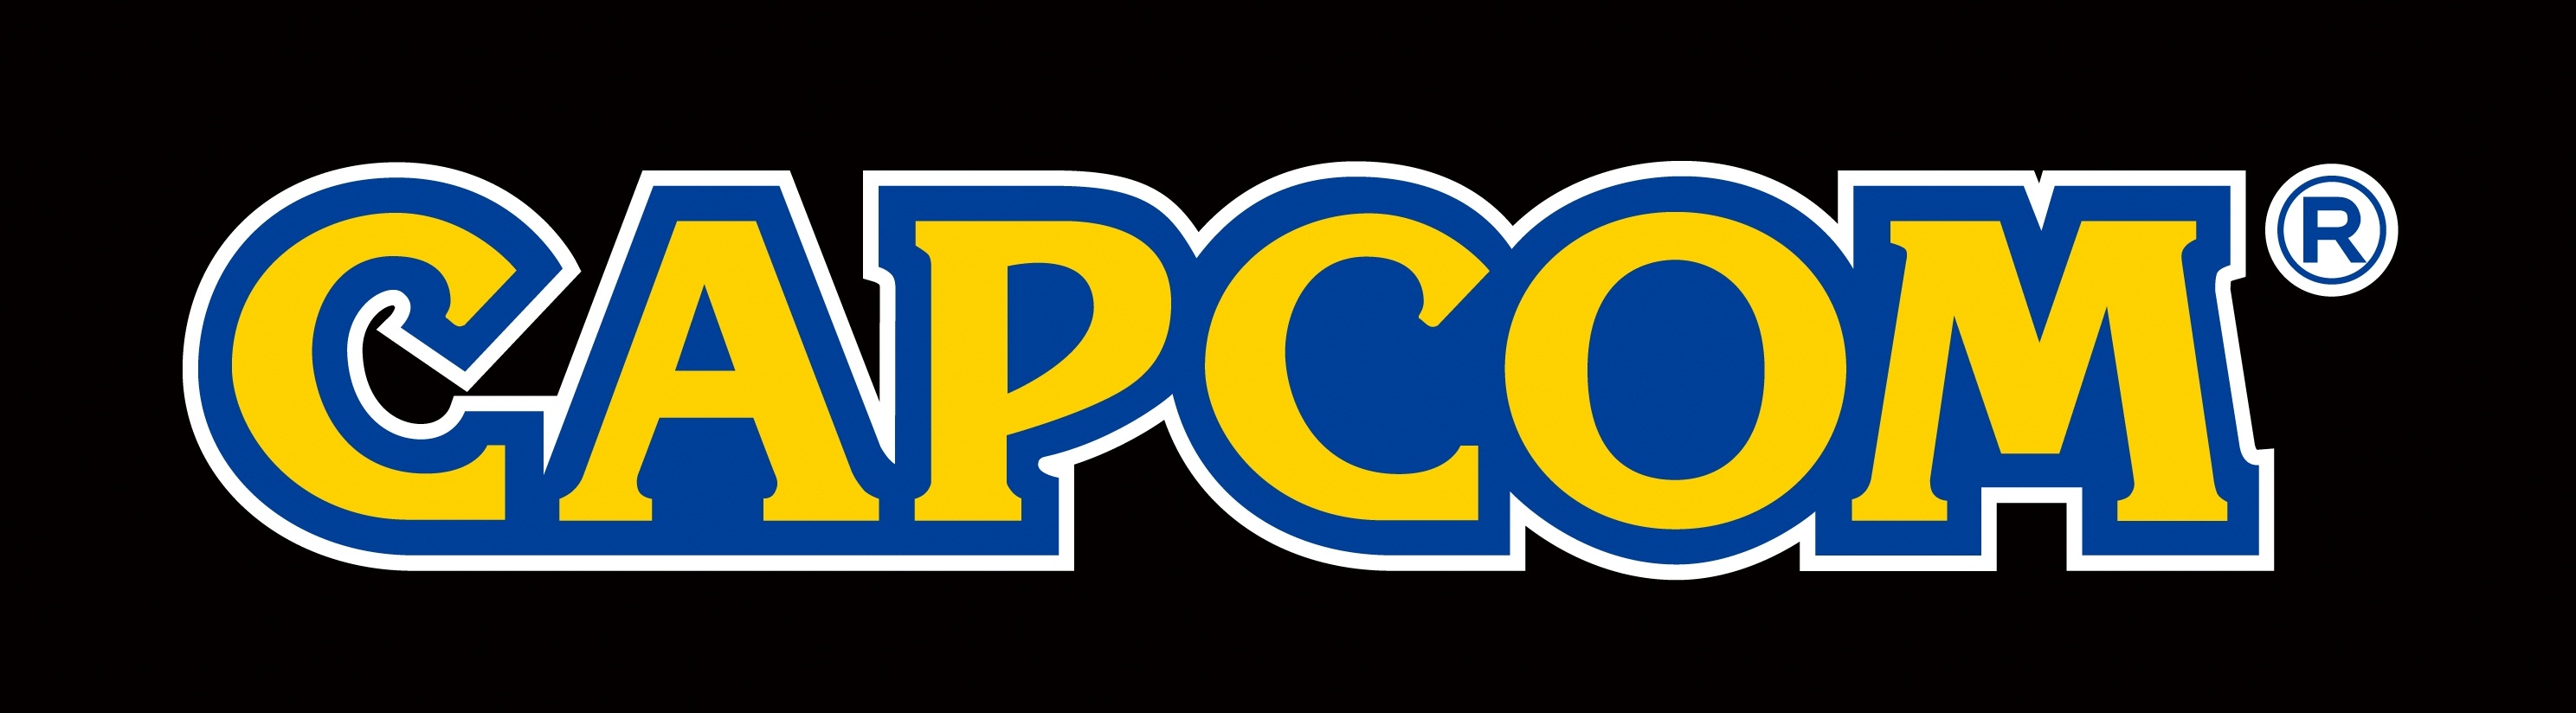 Capcom Logos